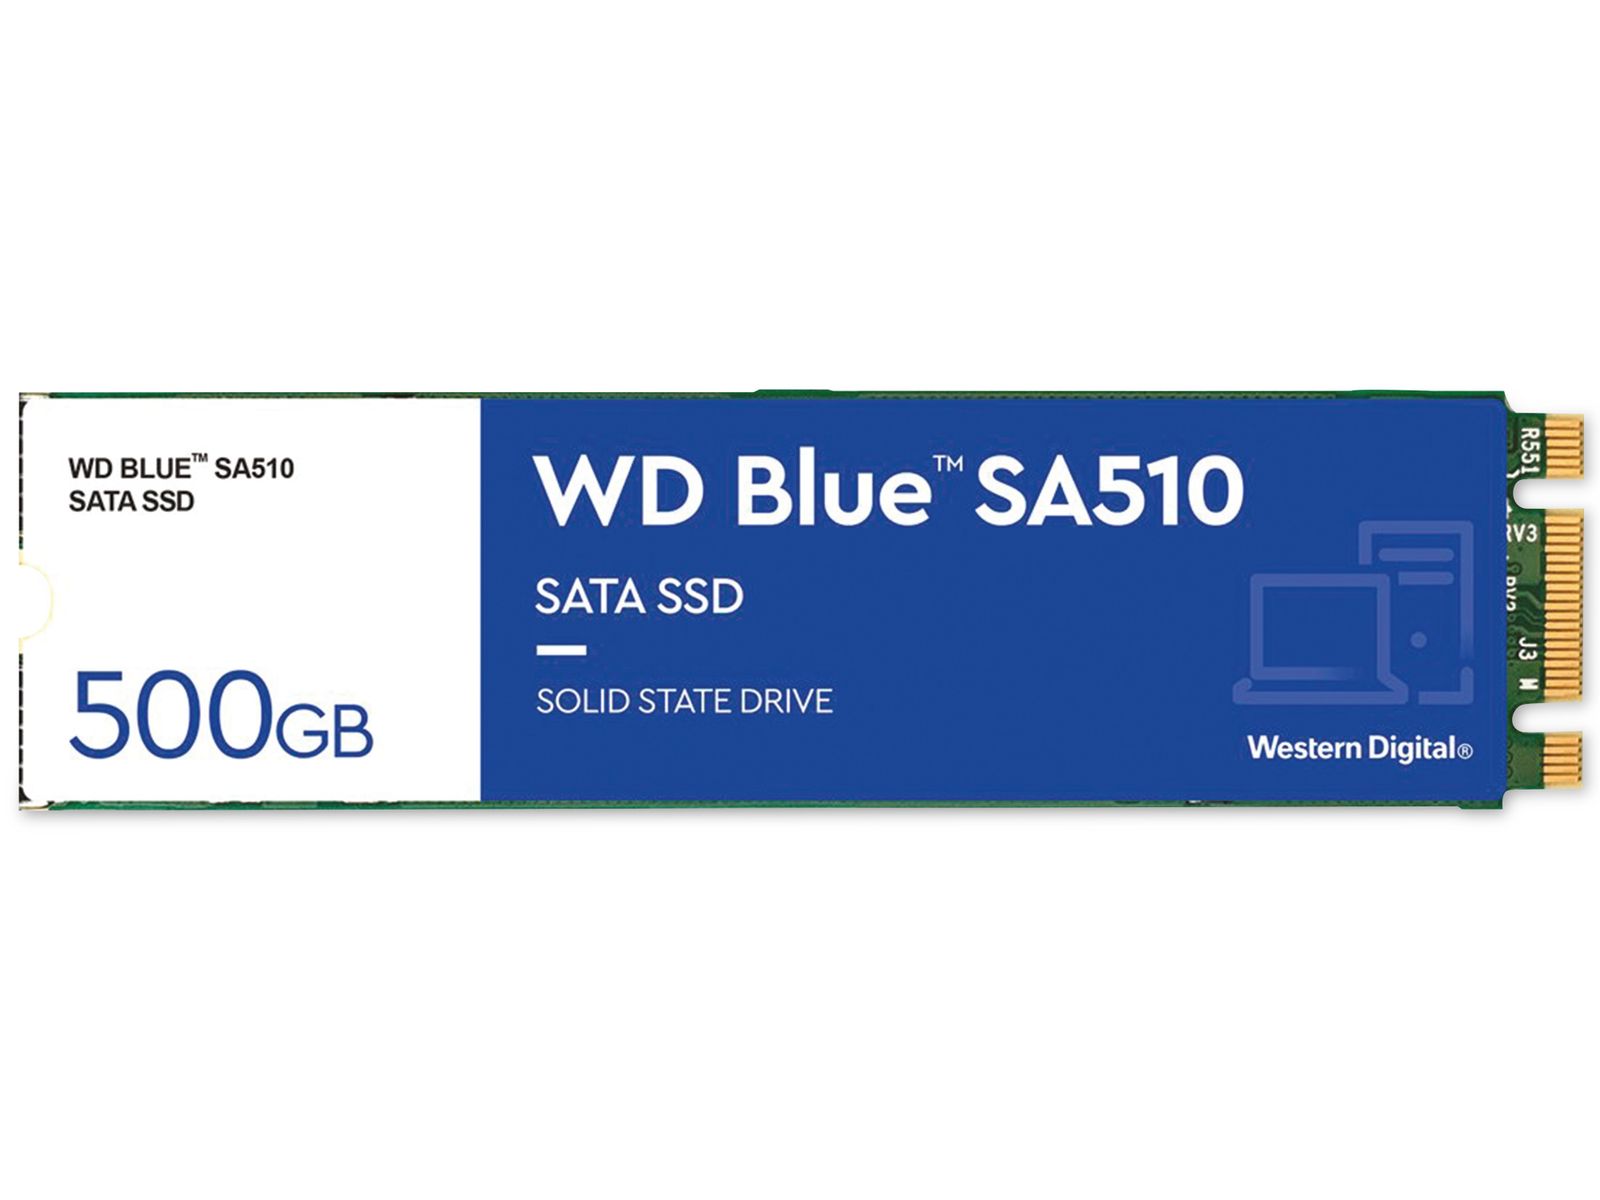 WESTERN DIGITAL M.2 SSD WD Blue SA510, 500 GB, intern von Western Digital